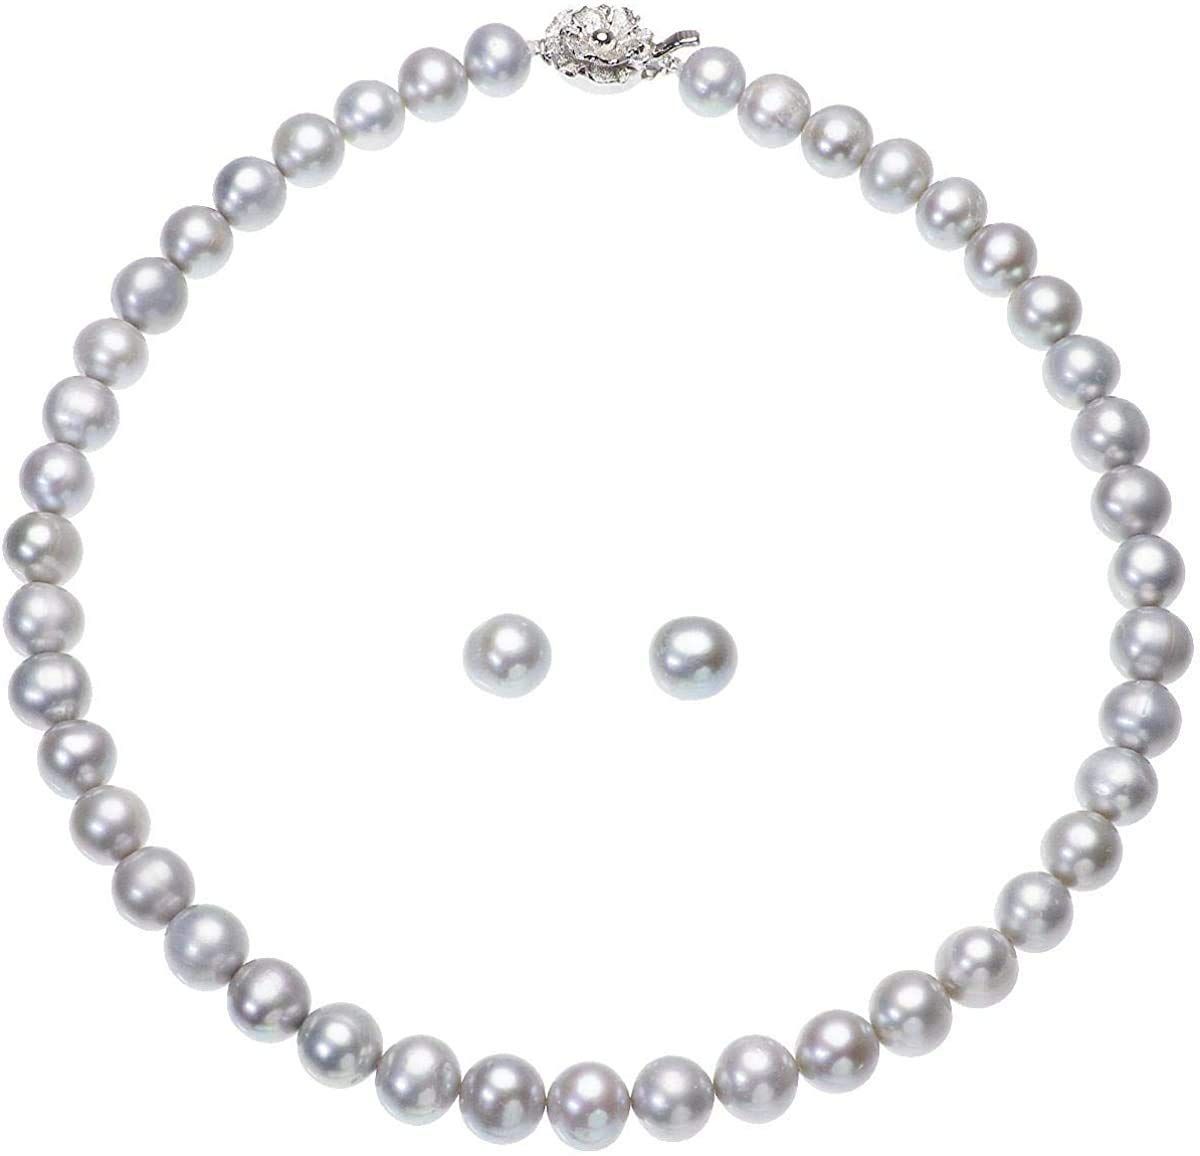 カテゴリー 真珠ネックレス 大粒 真珠 EfX8y-m35711557537 パール